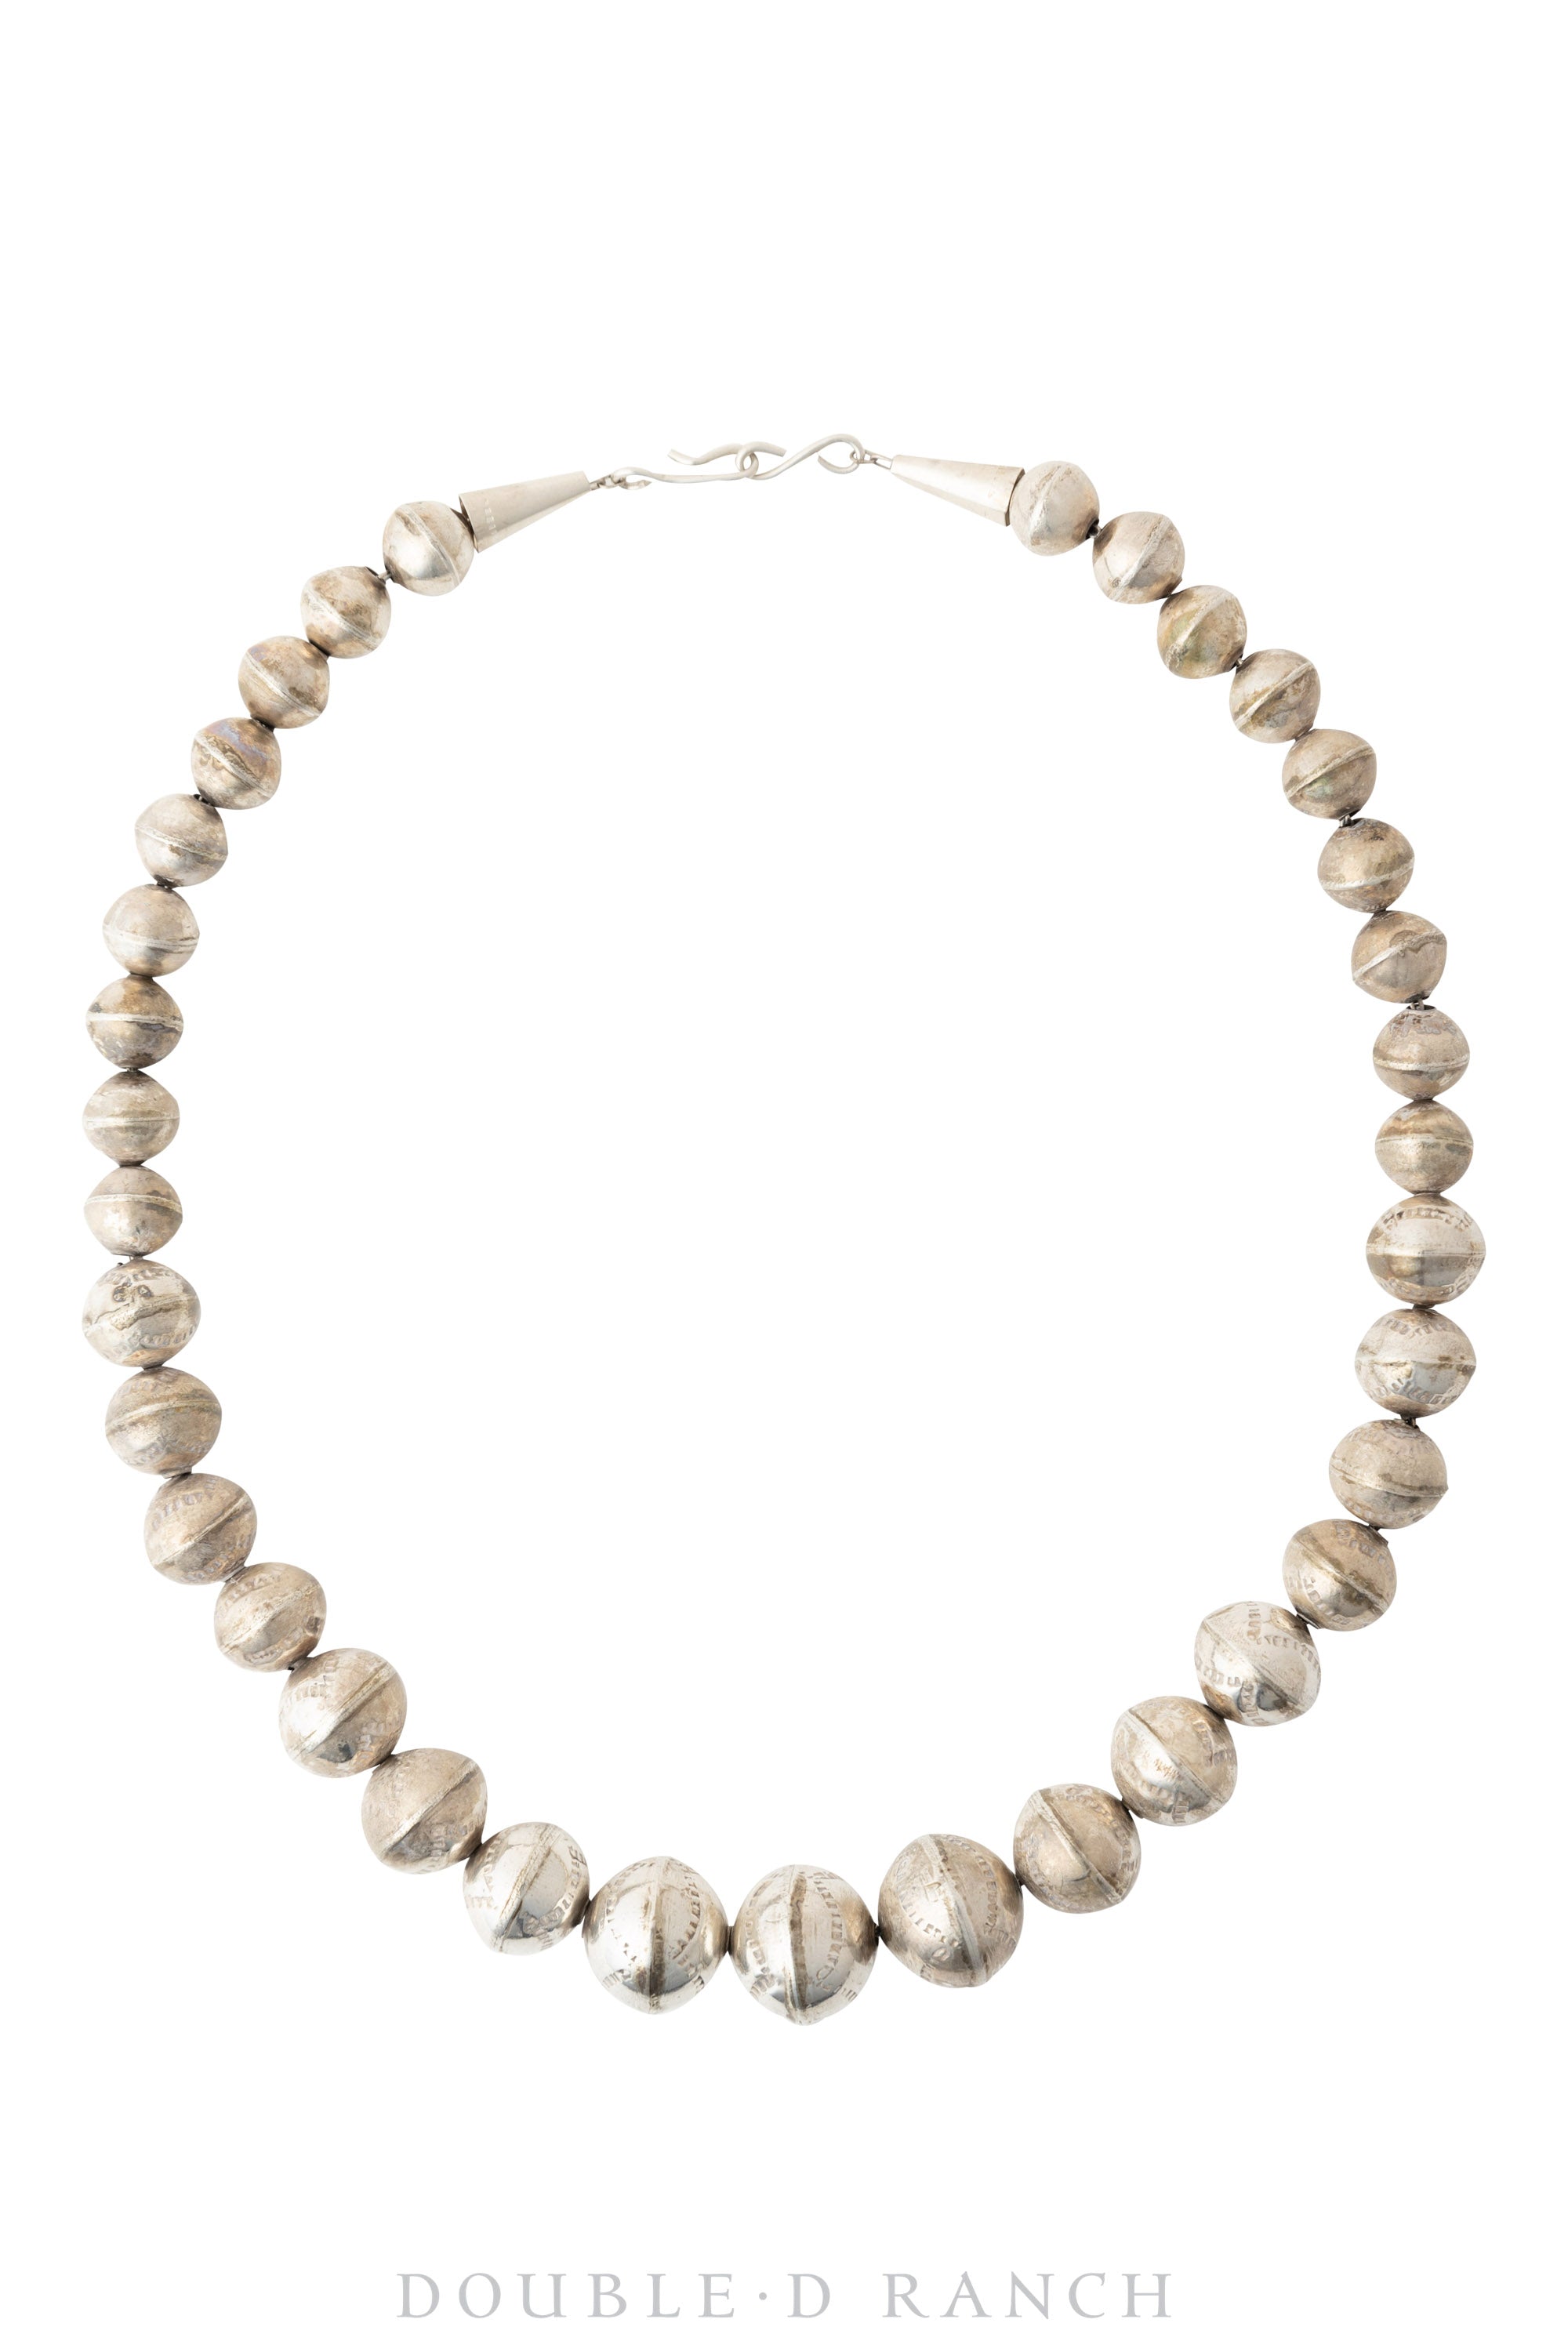 Necklace, Desert Pearls, Sterling Silver, Vintage, 1965